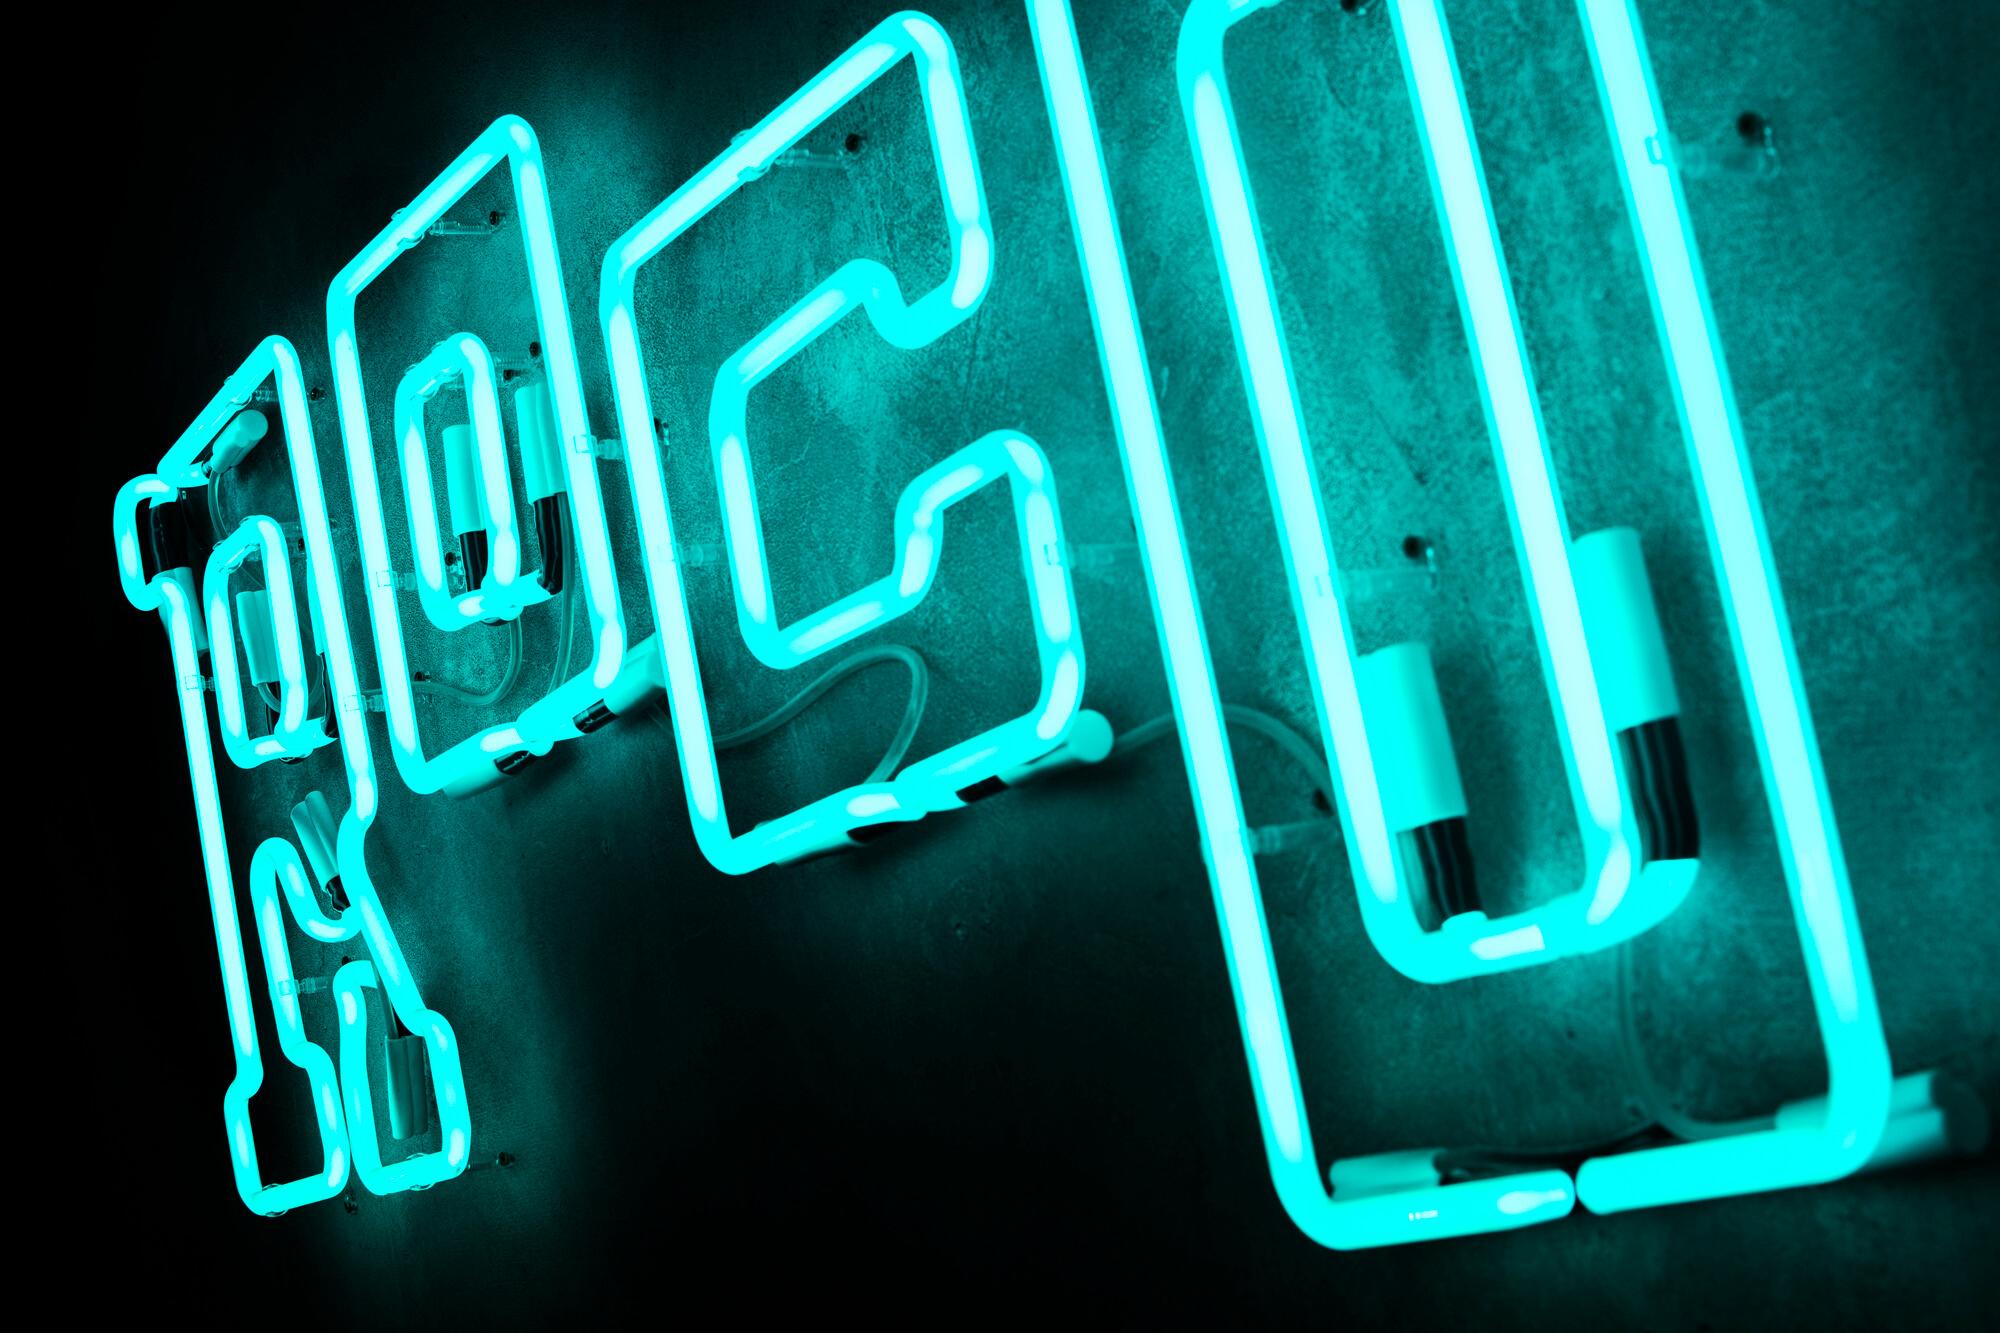 neon-rocotillo-neon-an-der-Wand-im-Restaurant-neon-an-der-Wand-neon-über-Tischen-neon-unter-beleuchtet-neon-an-der-Betonwand-neon-glas-neon-logo-schild